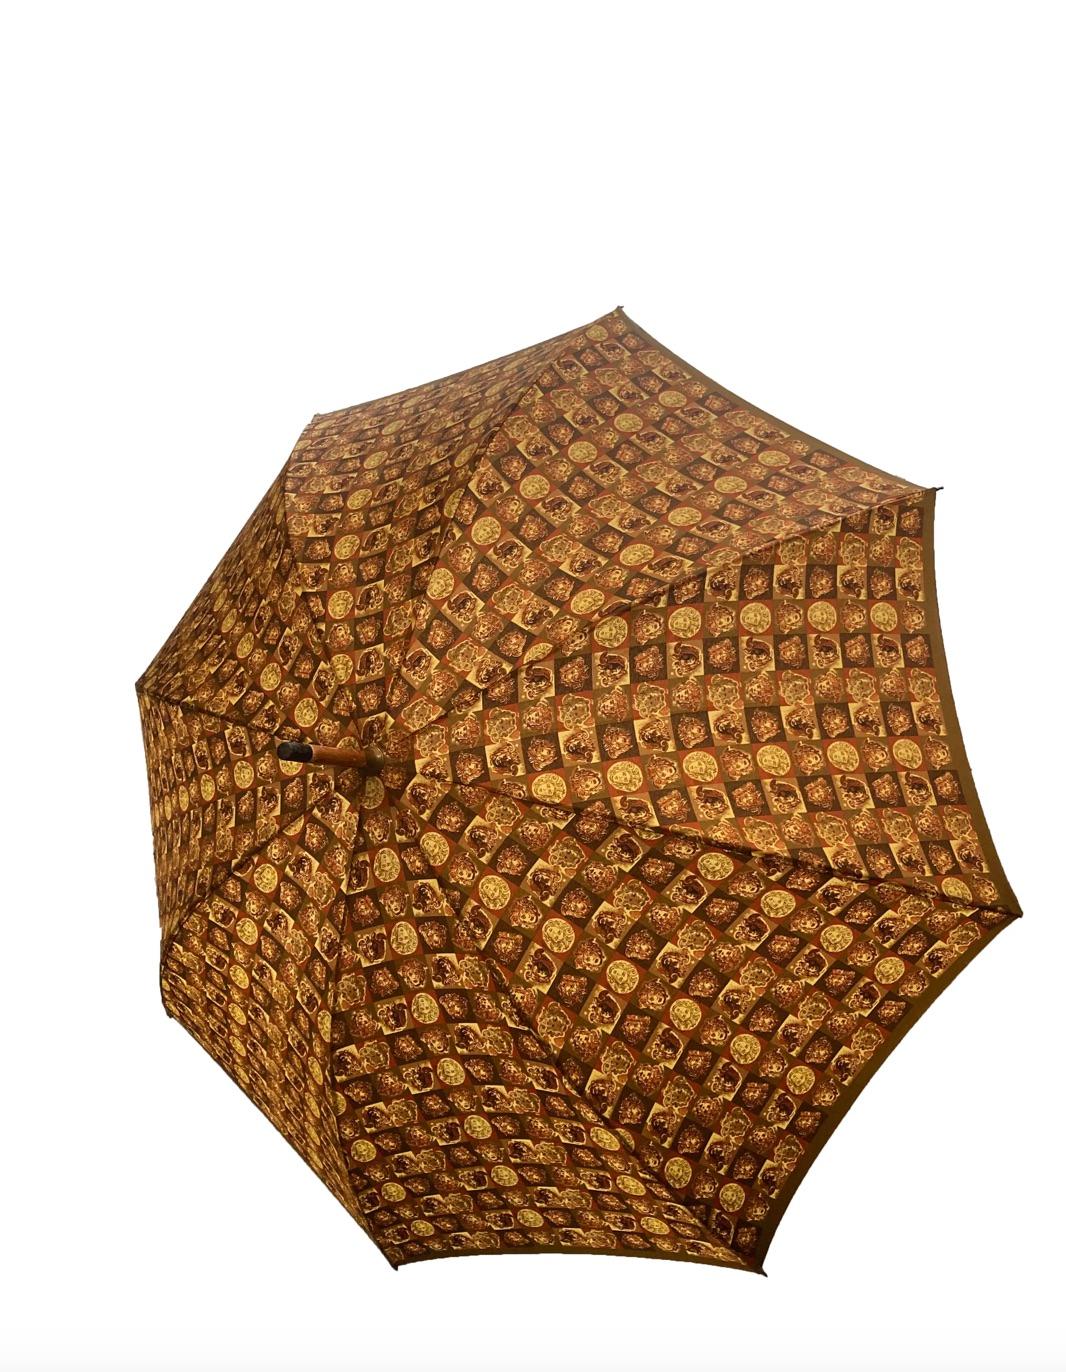 Vintage Gianni Versace Regenschirm der gleichnamigen Marke. Der Schaft aus goldbraunem Holz hat einen hakenförmigen Holzgriff, der mit dem charakteristischen Medusa-Kopf-Logo verziert ist, das von einer Umrandung im griechischen Stil aus